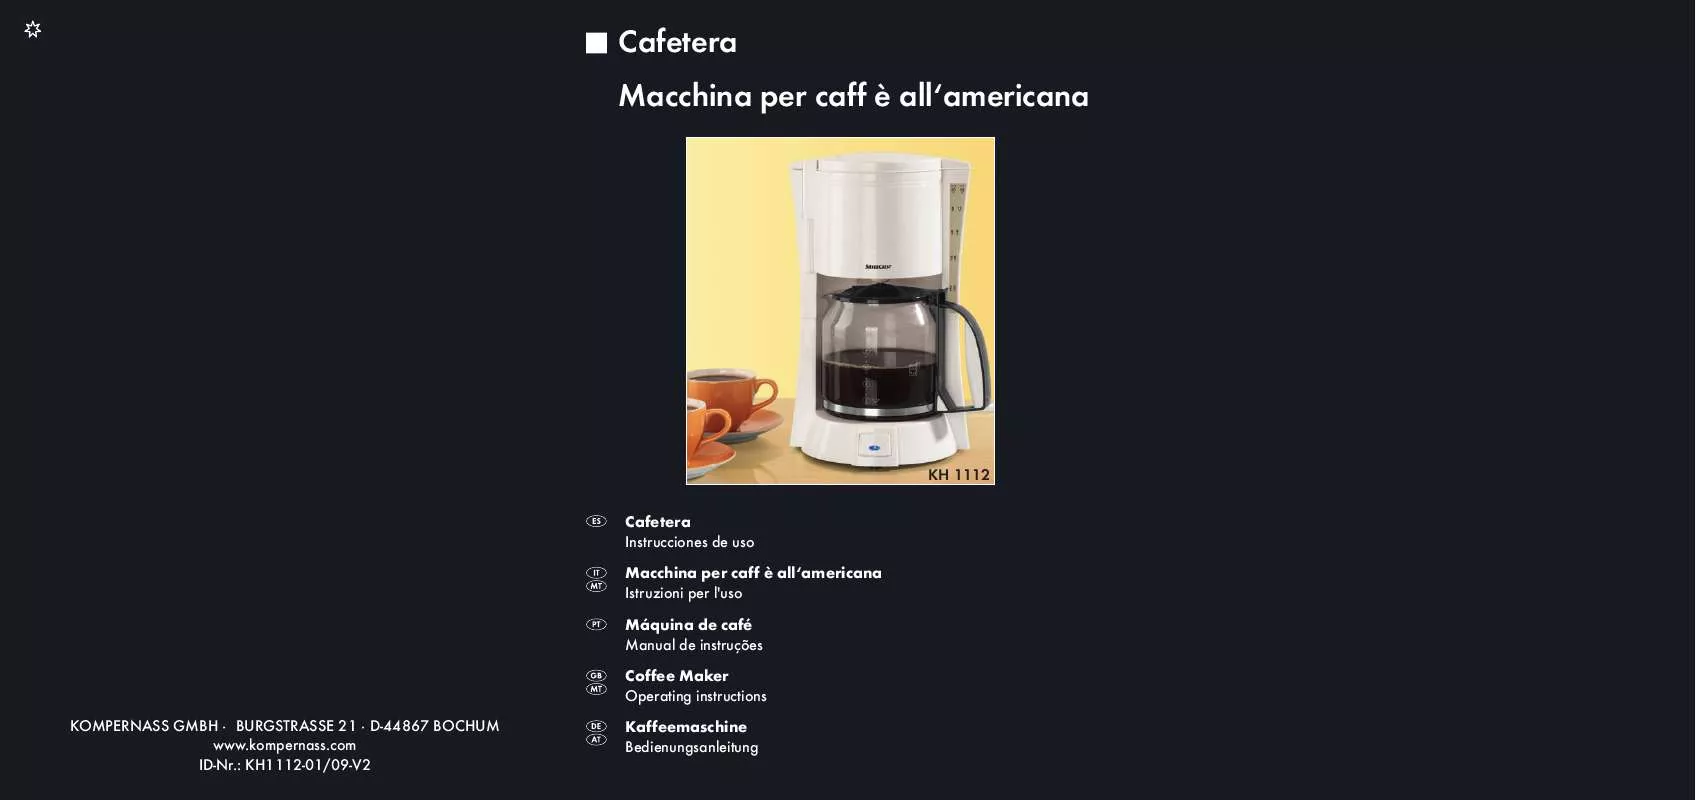 Mode d'emploi KOMPERNASS SILVERCREST KH 1112 COFFEE MAKER